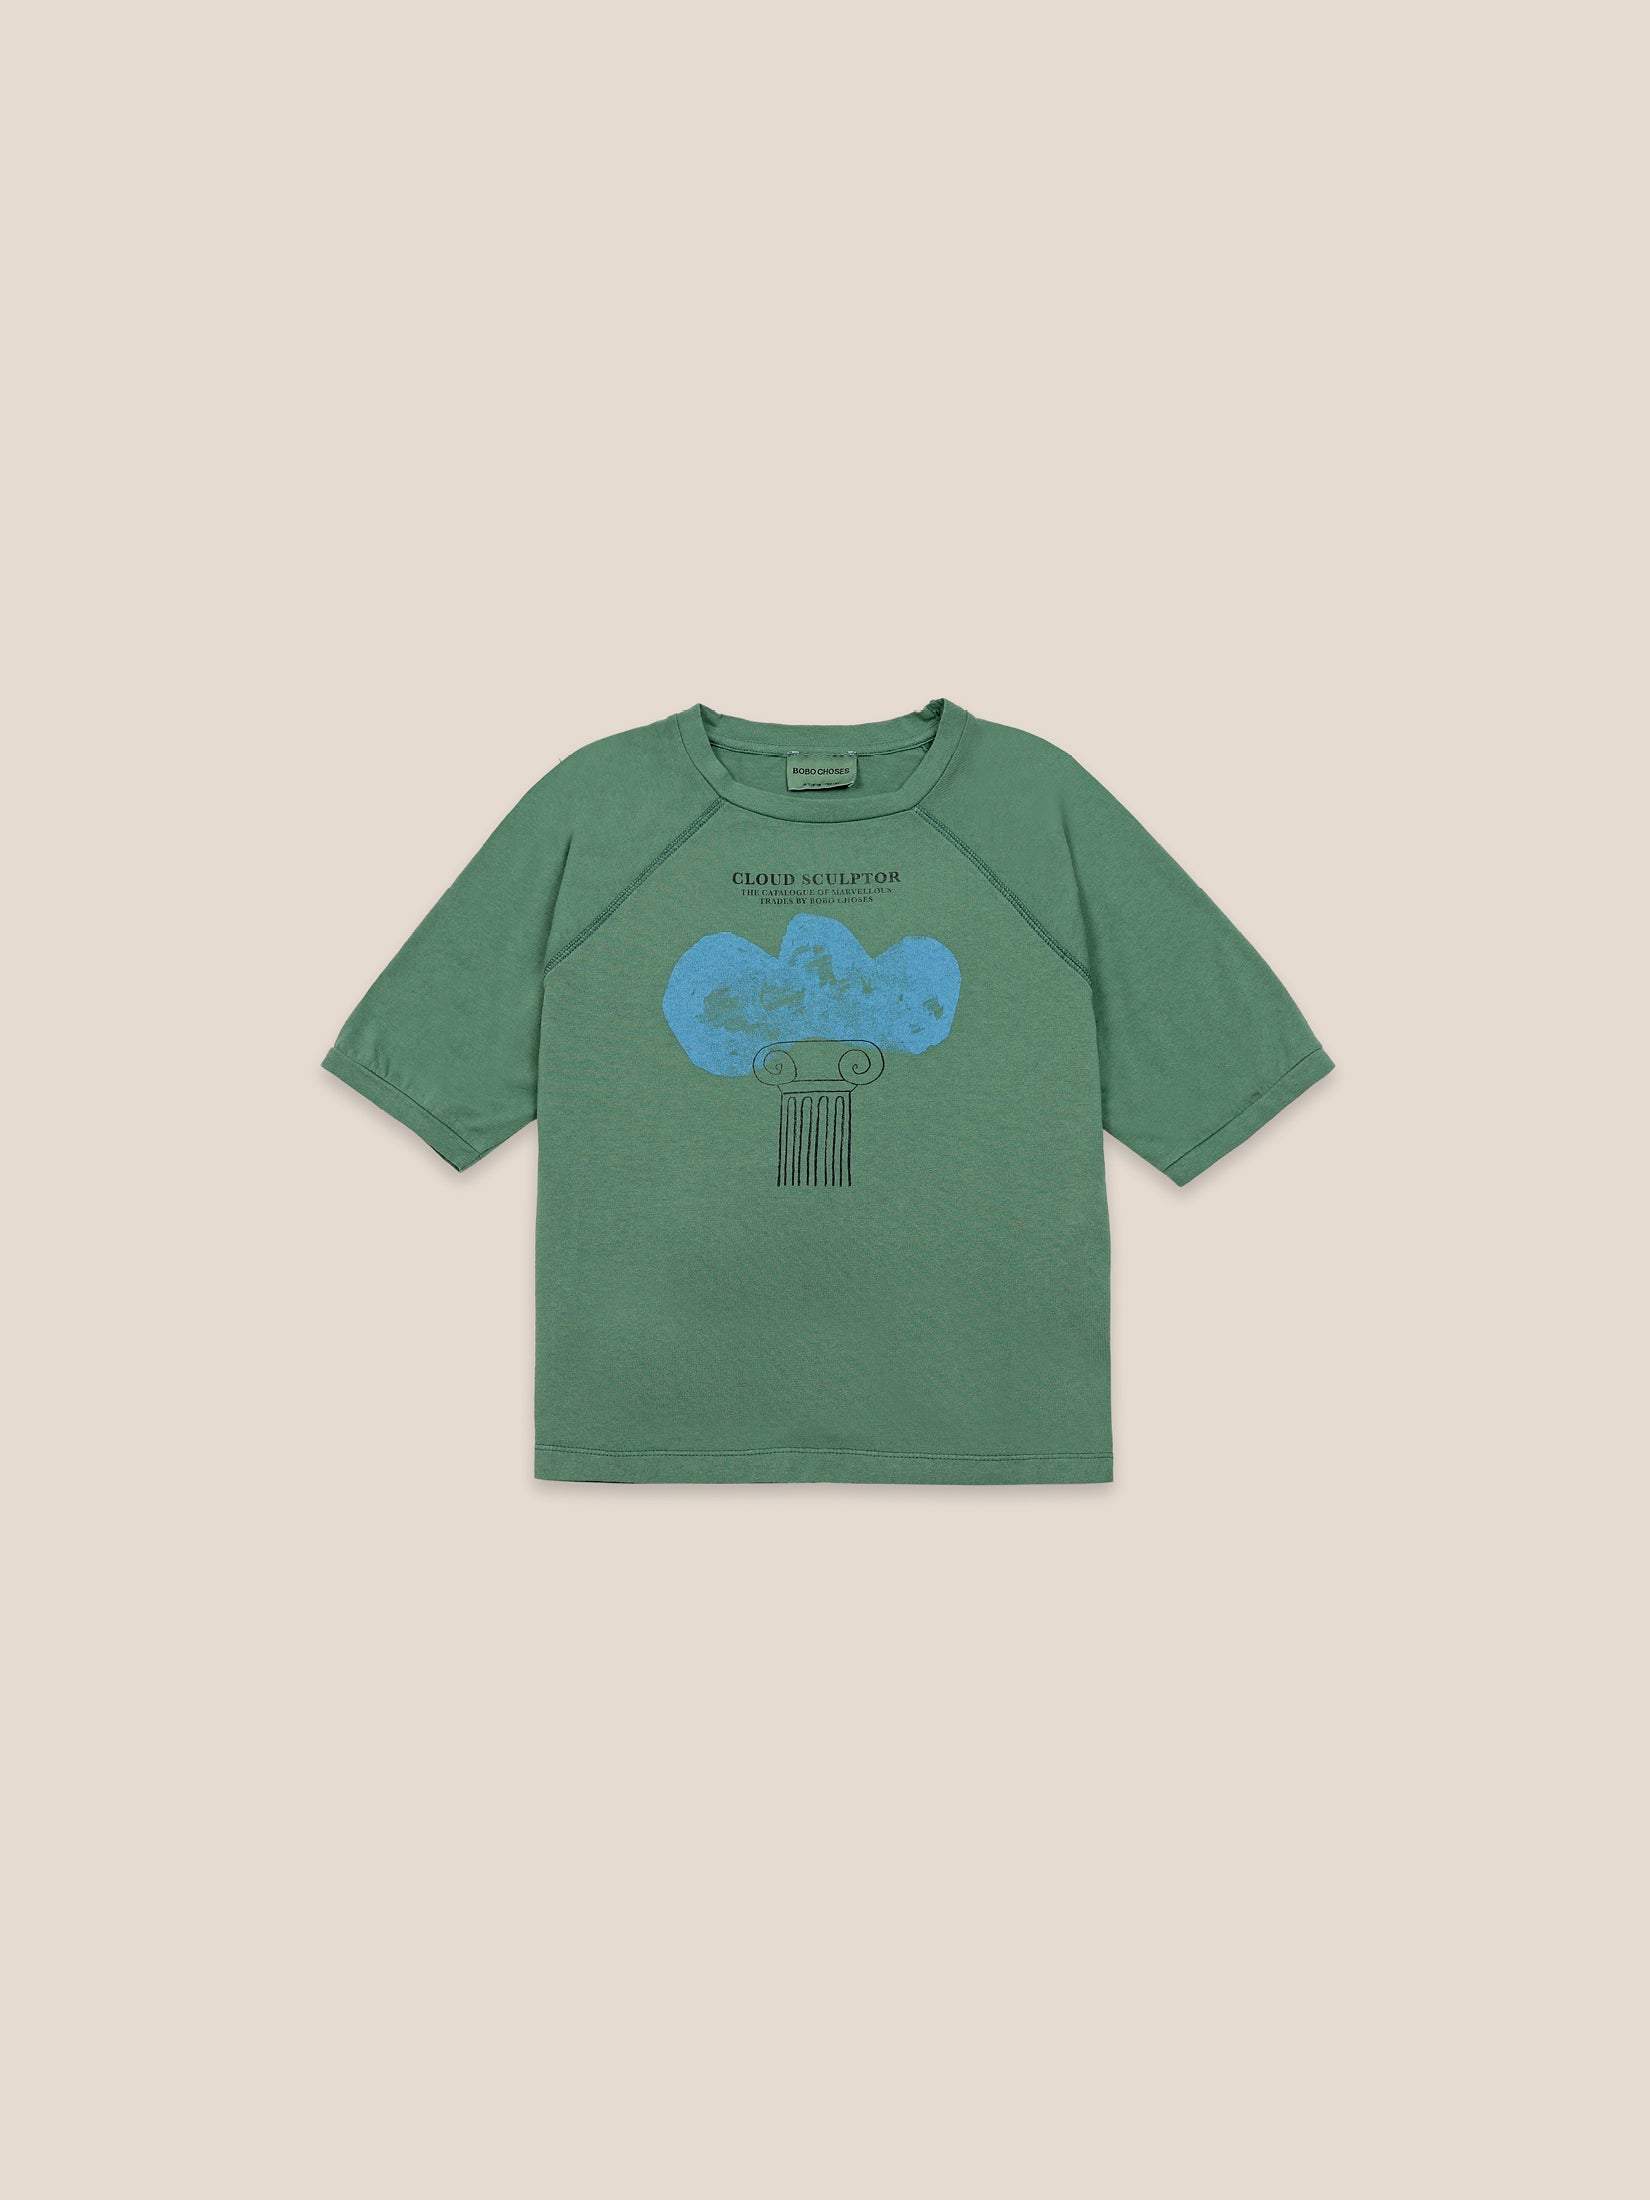 Boys Greener Pastures Cloud Sculptor Organic Cotton T-Shirt